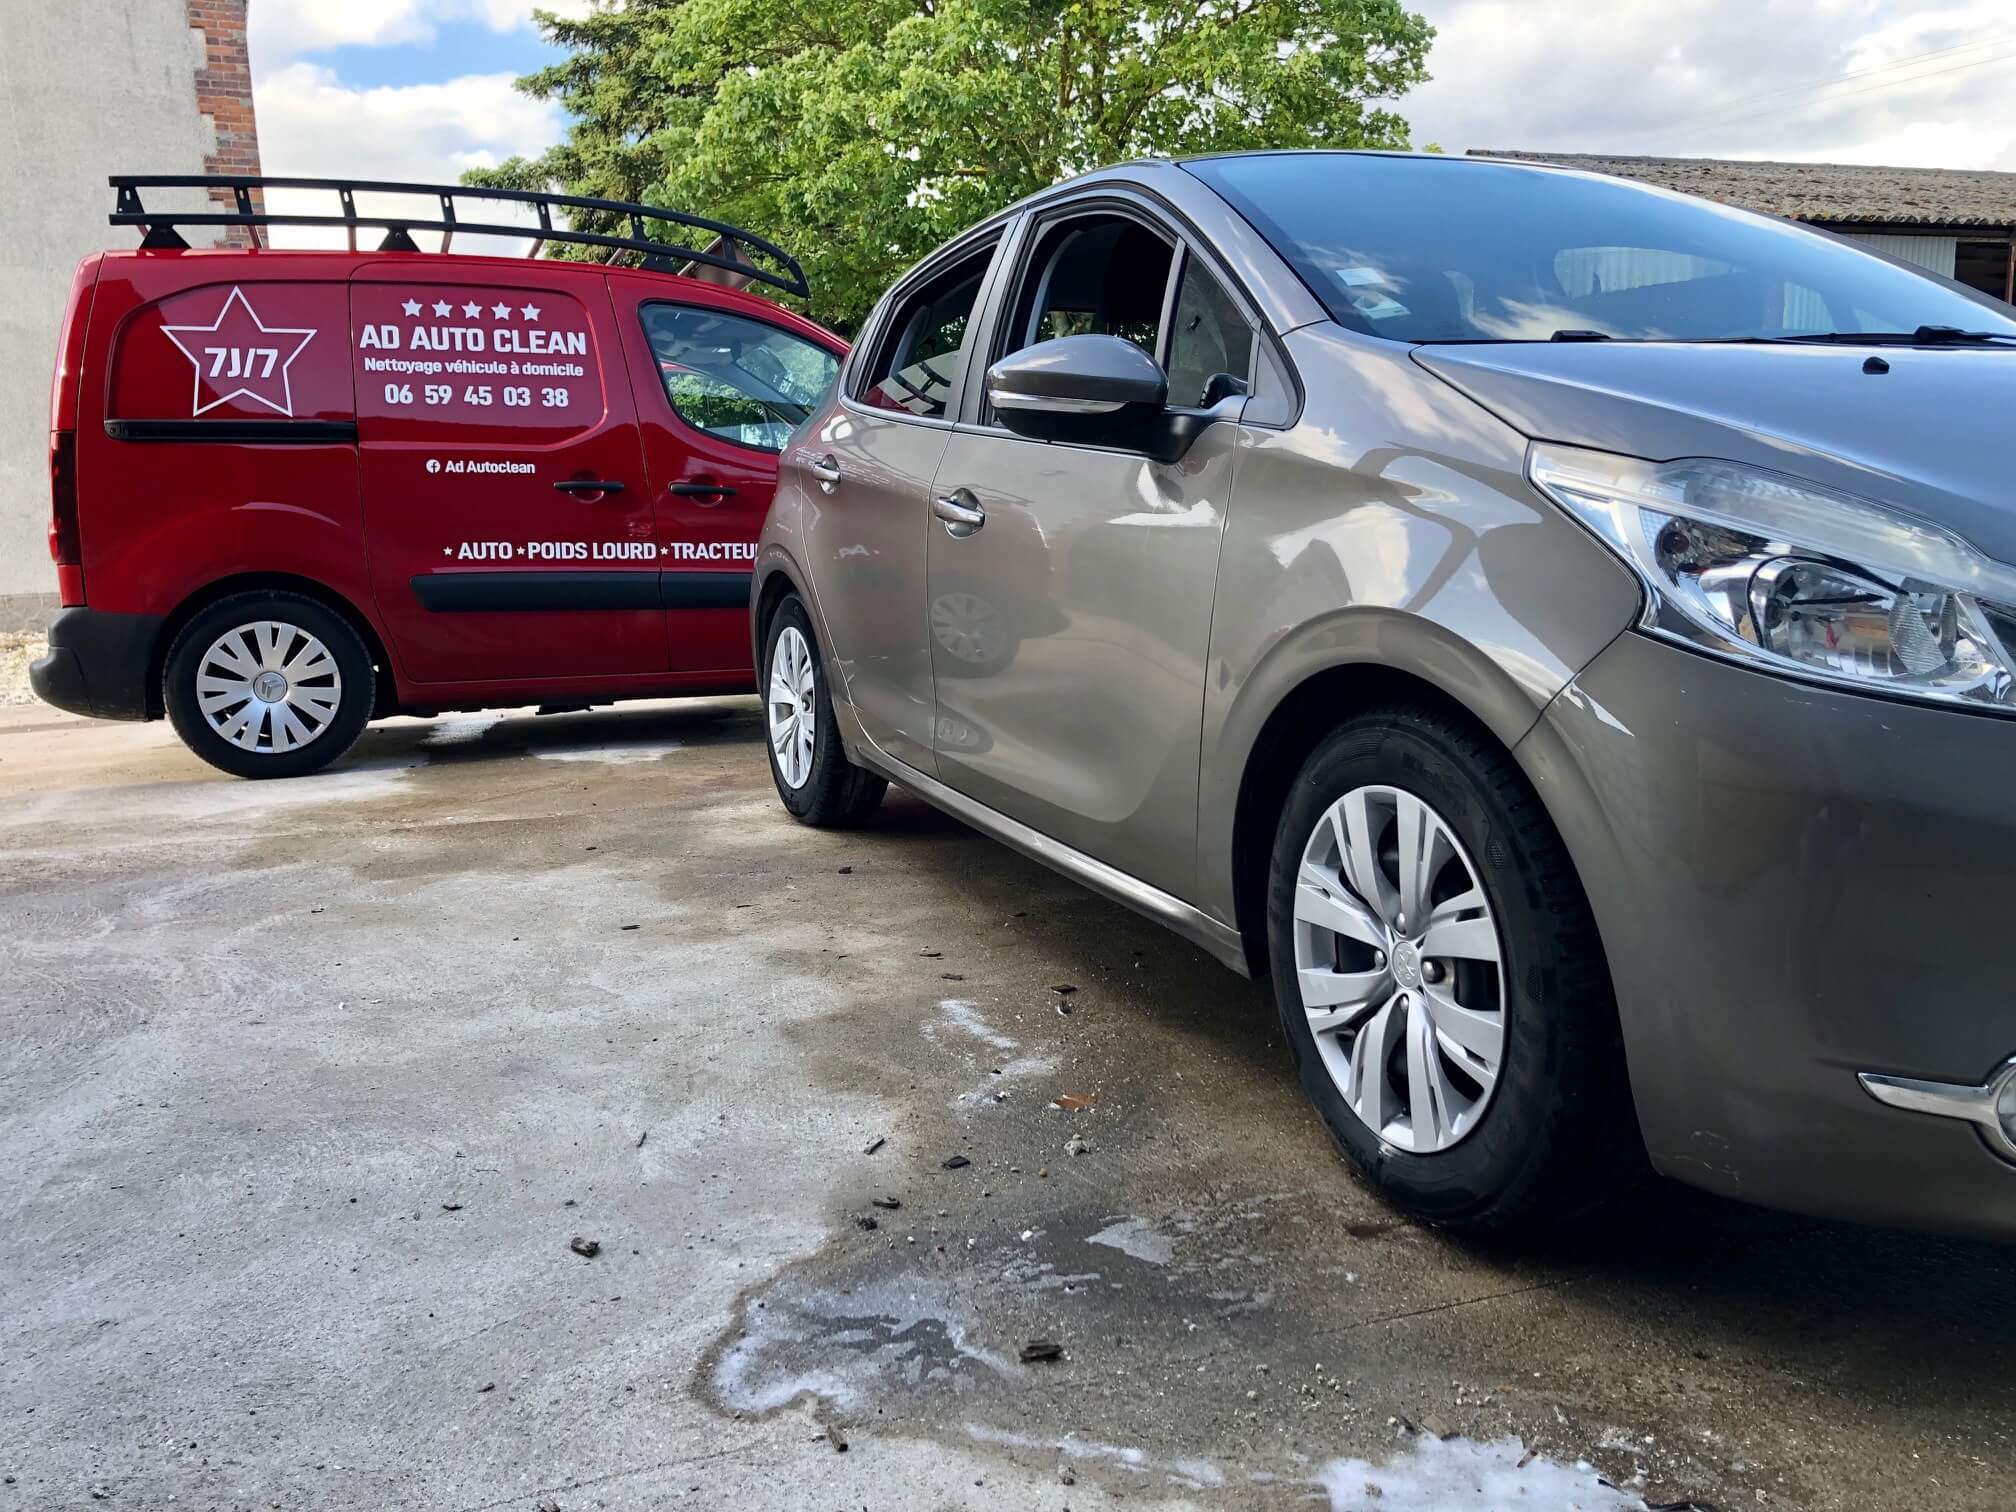 AD Auto Clean : nettoyage voiture à Orléans | Loiret (45)